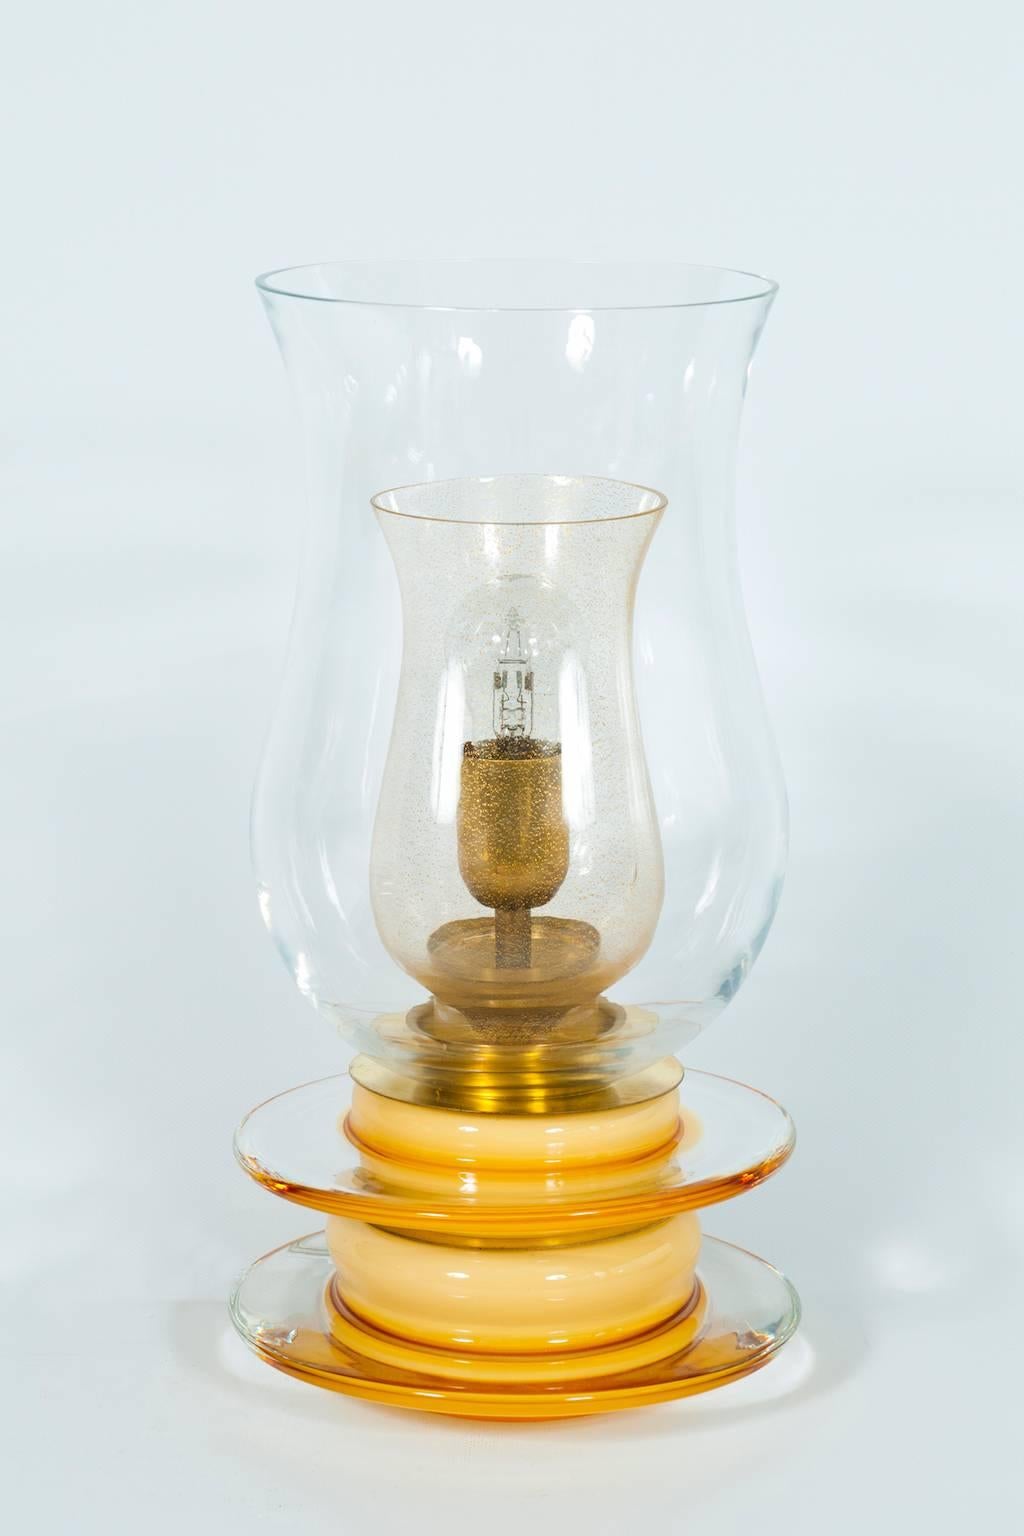 Amazing and unique Italian Venetian, Table Lamp, Blown Murano Glass, Candle Shape, in color Gold & Amber, 1970s.
Il s'agit d'une lampe de table unique, grâce à sa forme spéciale semblable à une bougie, et à sa fabrication. La lampe de table est